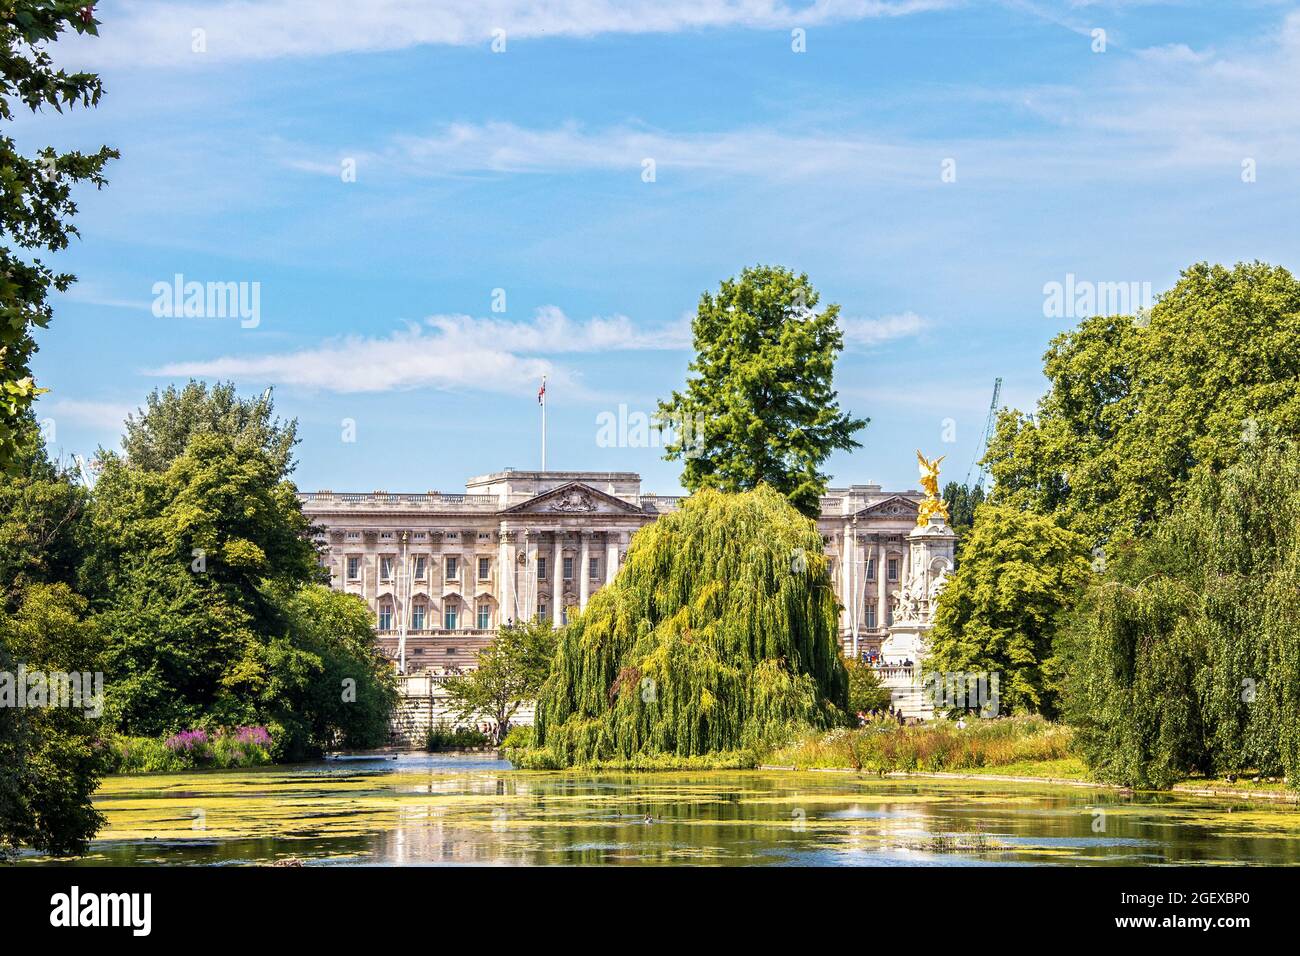 07 24 2019 London UK Blick auf den Buckingham Palace Blick über den See im St James Park mit weinenden Weiden und Enten am schönen Sommertag Stockfoto